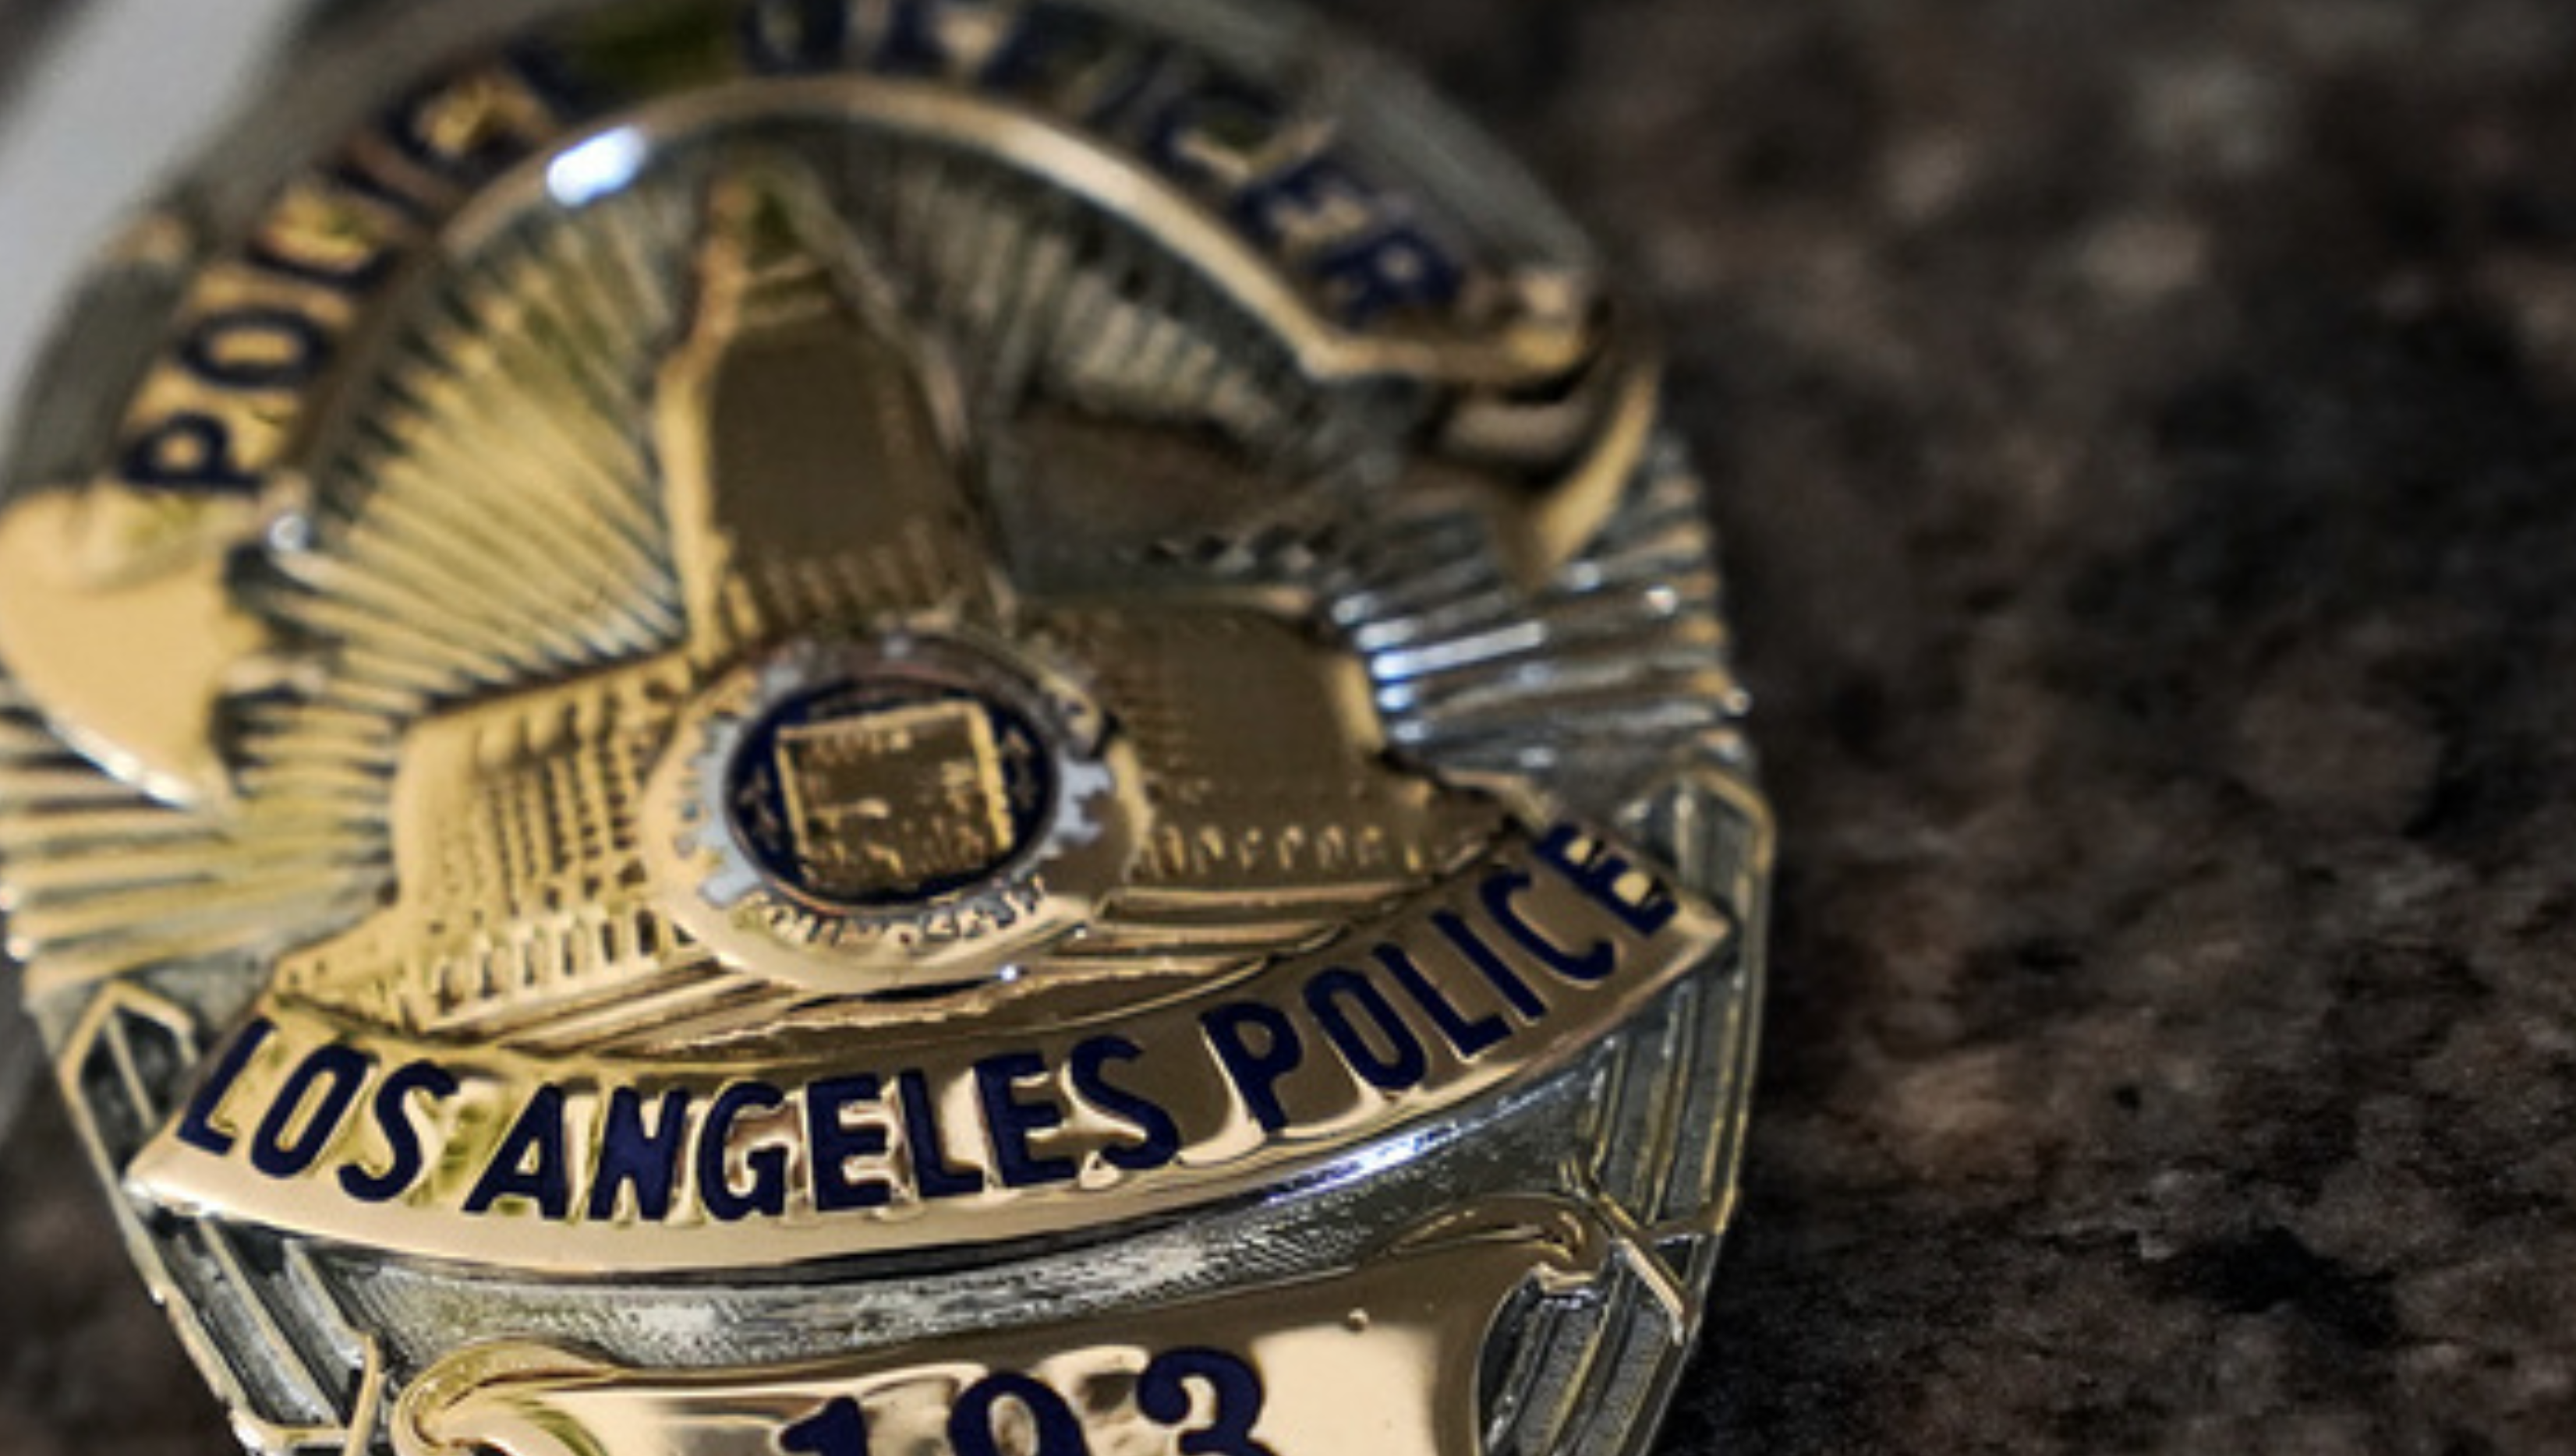 Los Angeles första svarta polis får postumt tillbaka sin polisbricka.